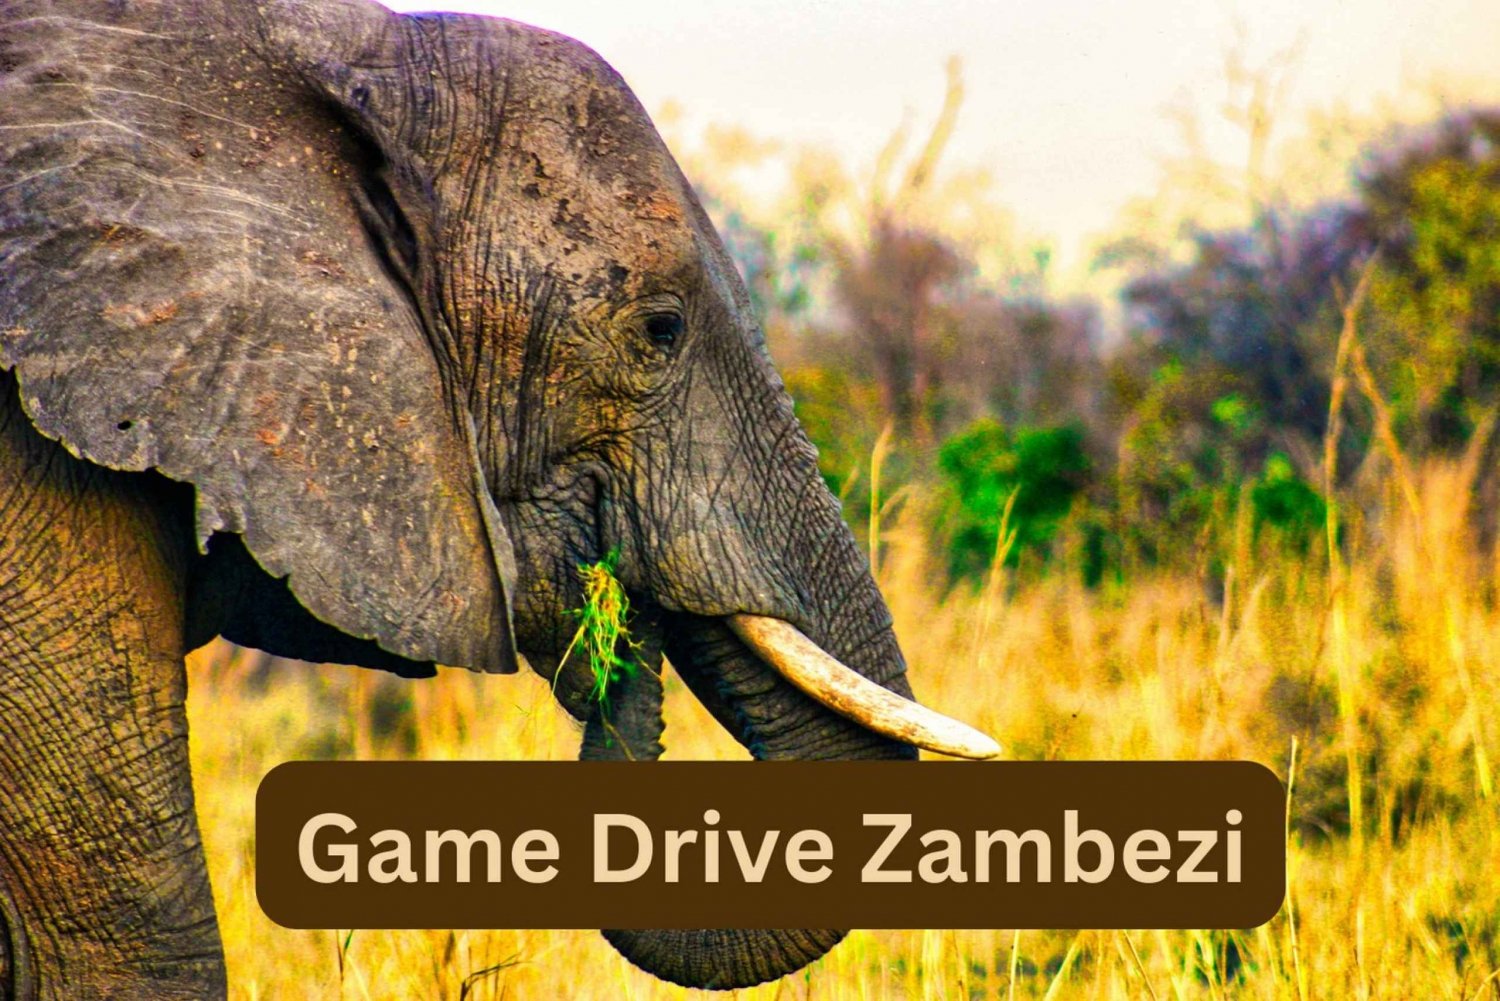 Victoria watervallen: Game rit Zambezi